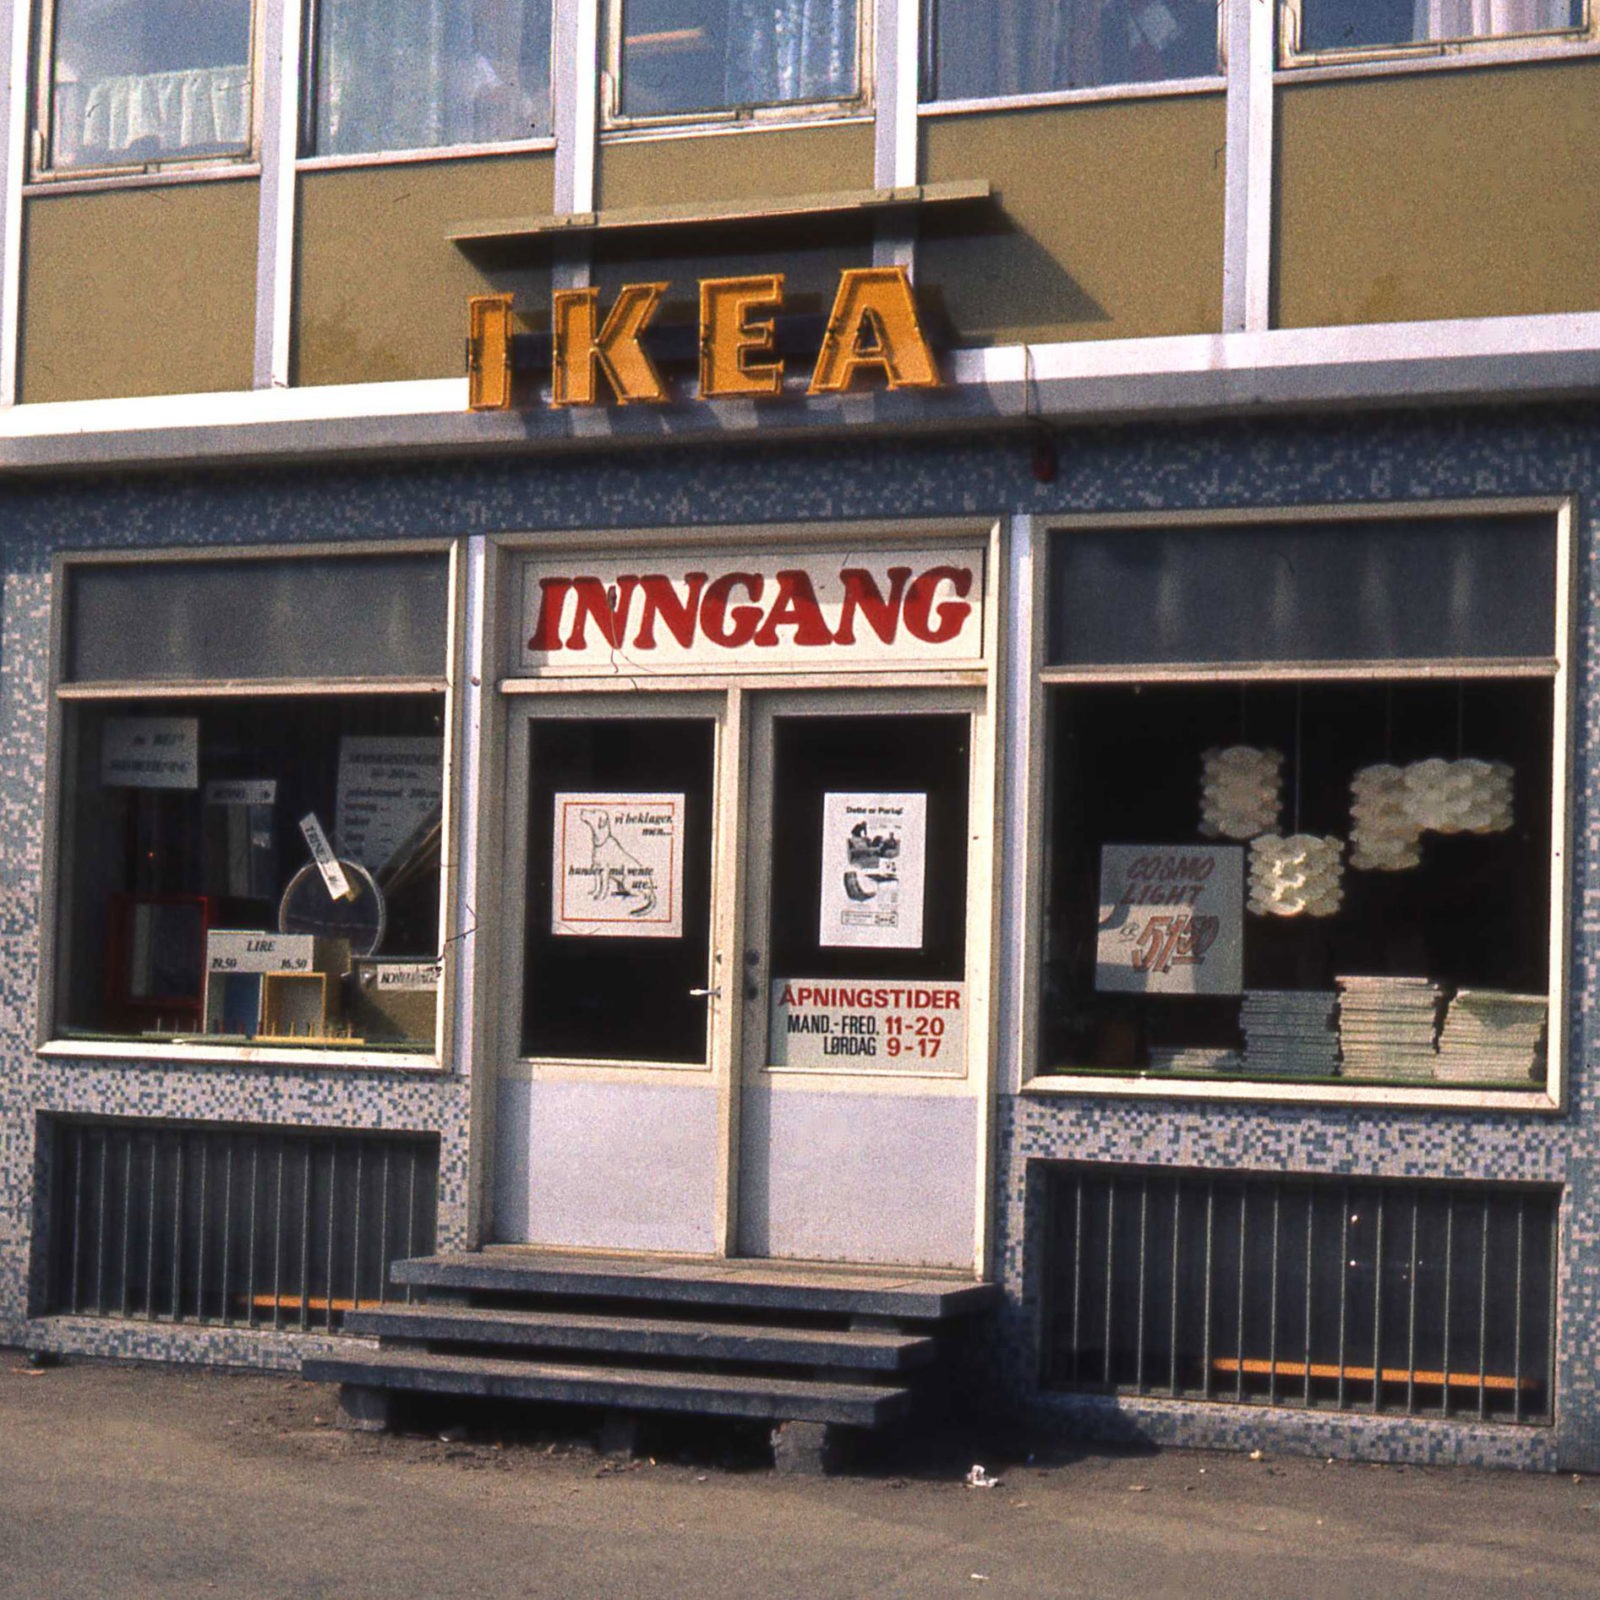 Butiksingång 1960-tal. På gul skylt ovanför dörren står det IKEA. I skyltfönstren syns lampor och travade kataloger.